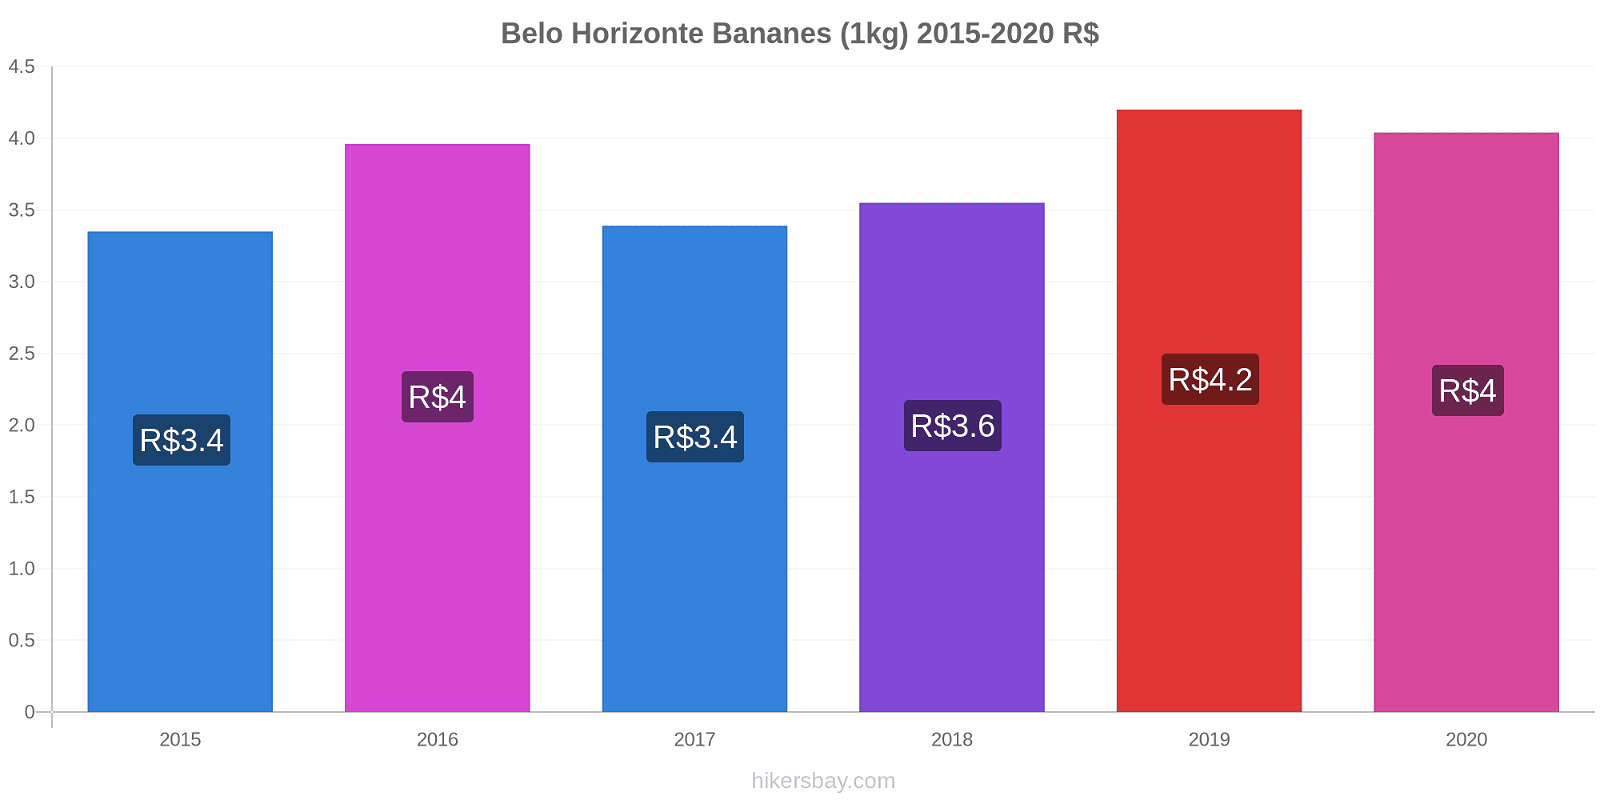 Belo Horizonte changements de prix Bananes (1kg) hikersbay.com